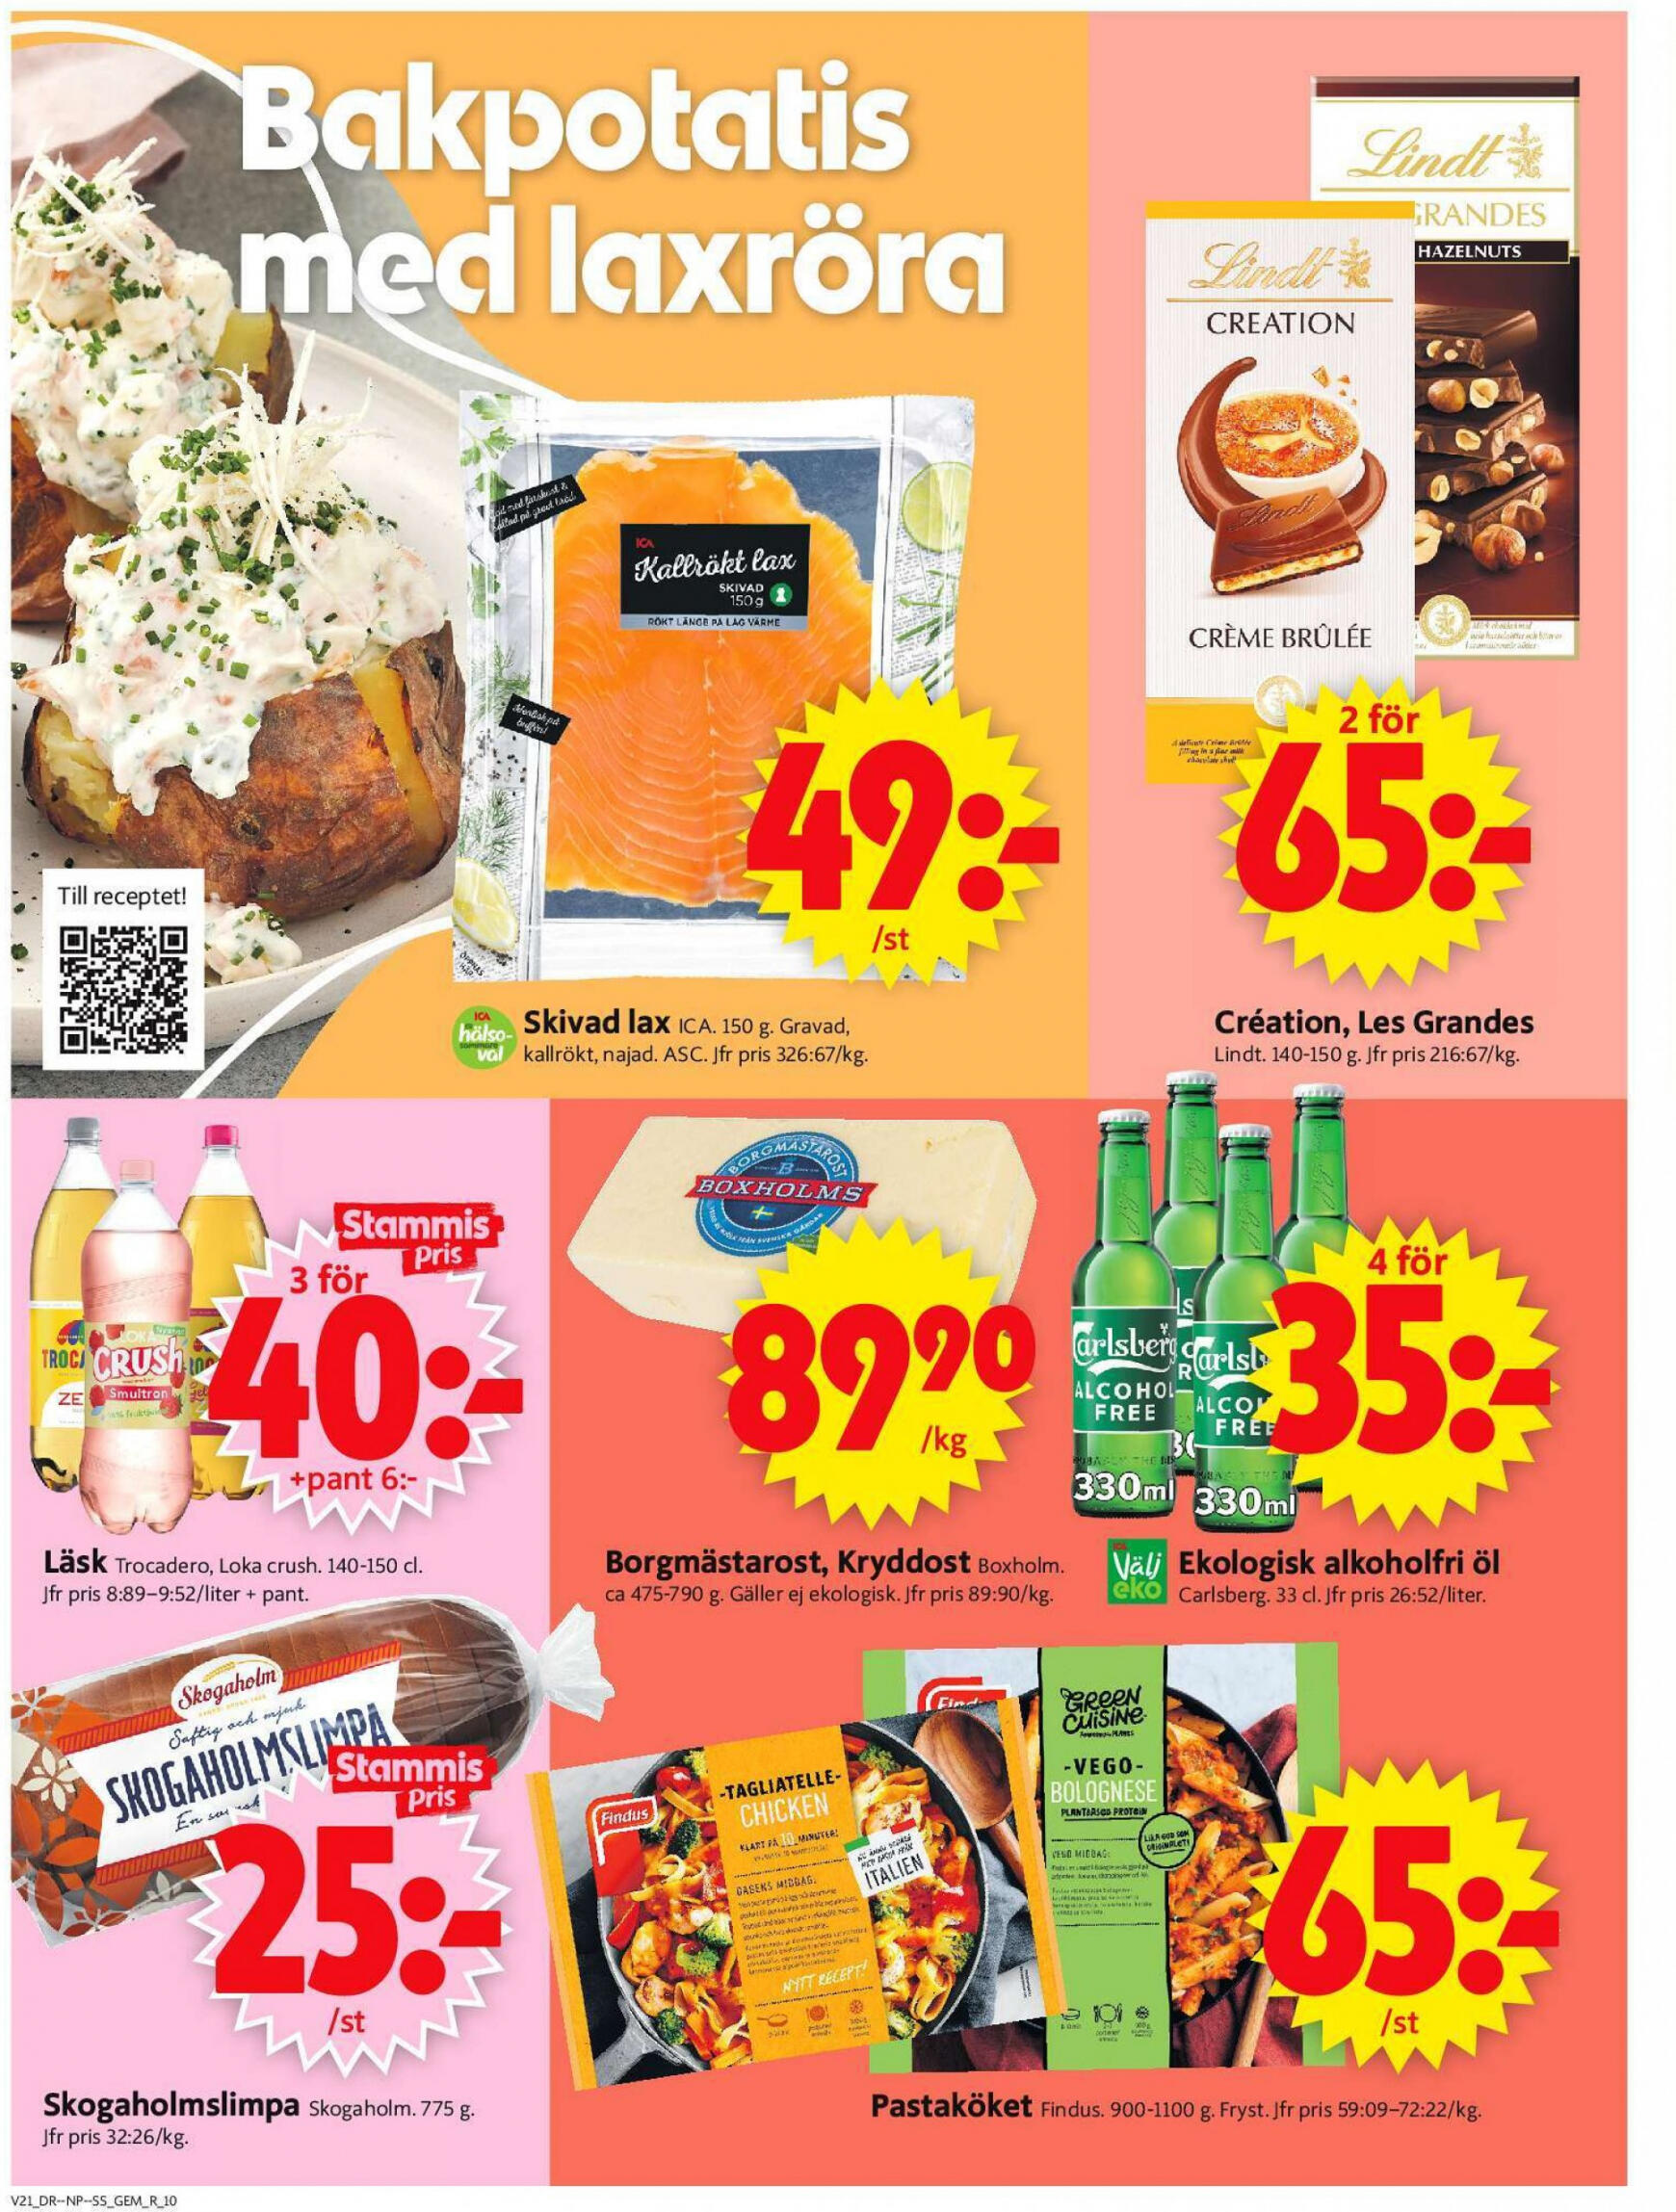 ica-supermarket - Flyer ICA Supermarket current 20.05. - 26.05. - page: 12